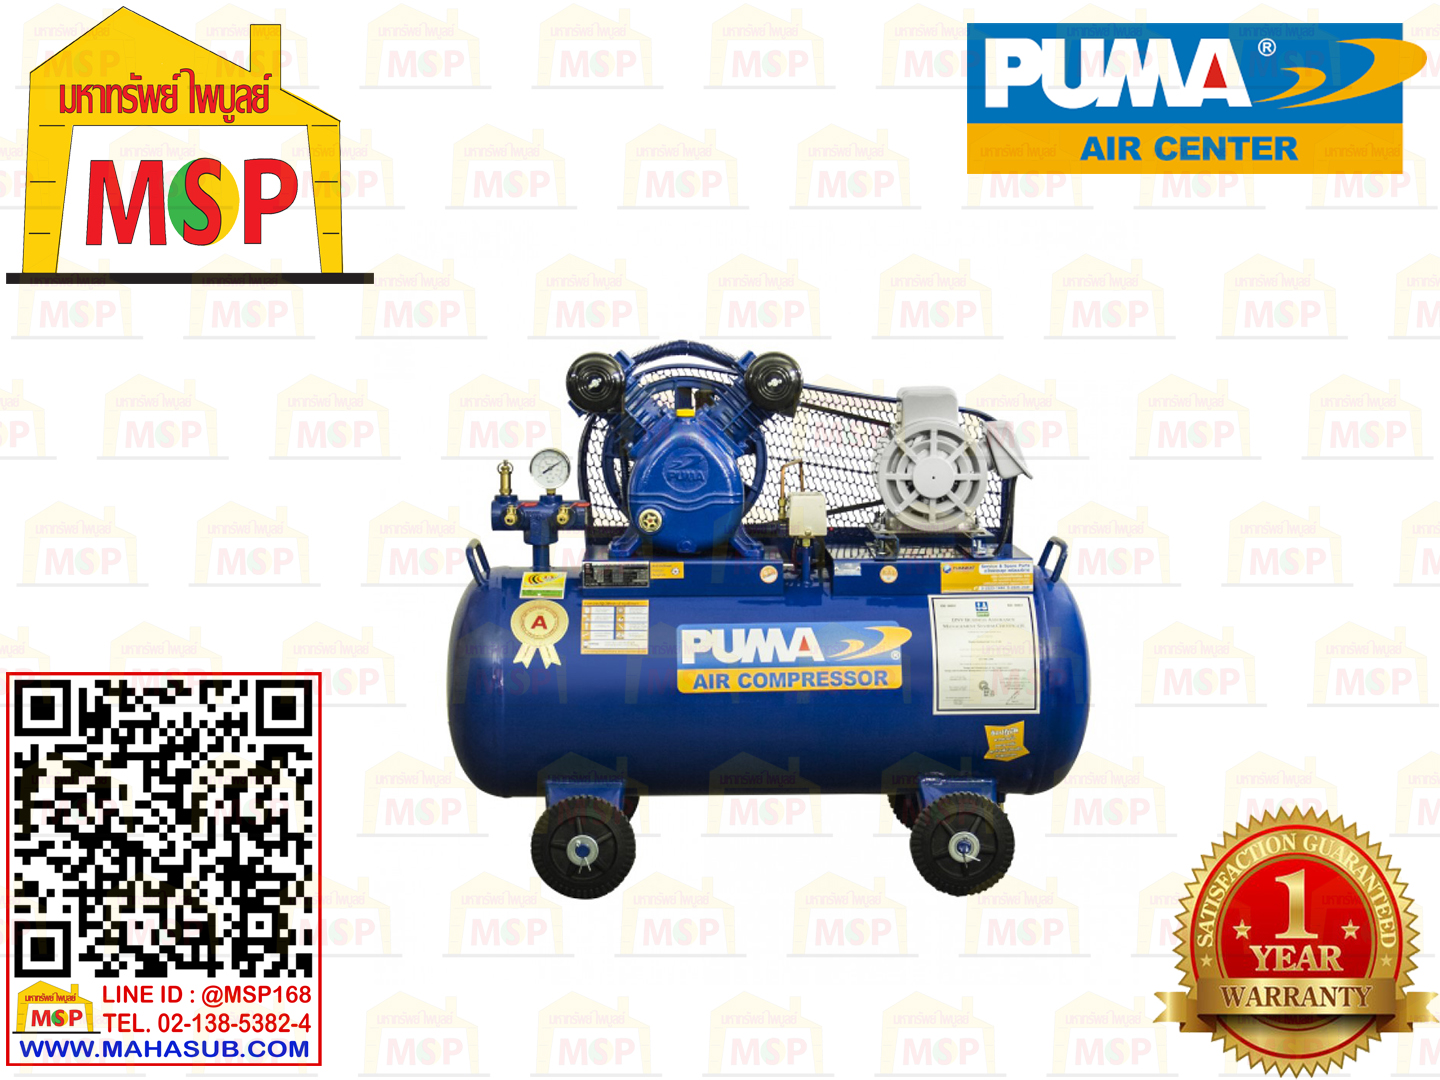 Puma ปั๊มลม PP21-PPM220V 2สูบ 92L พร้อมมอเตอร์ Puma 1HP 220V